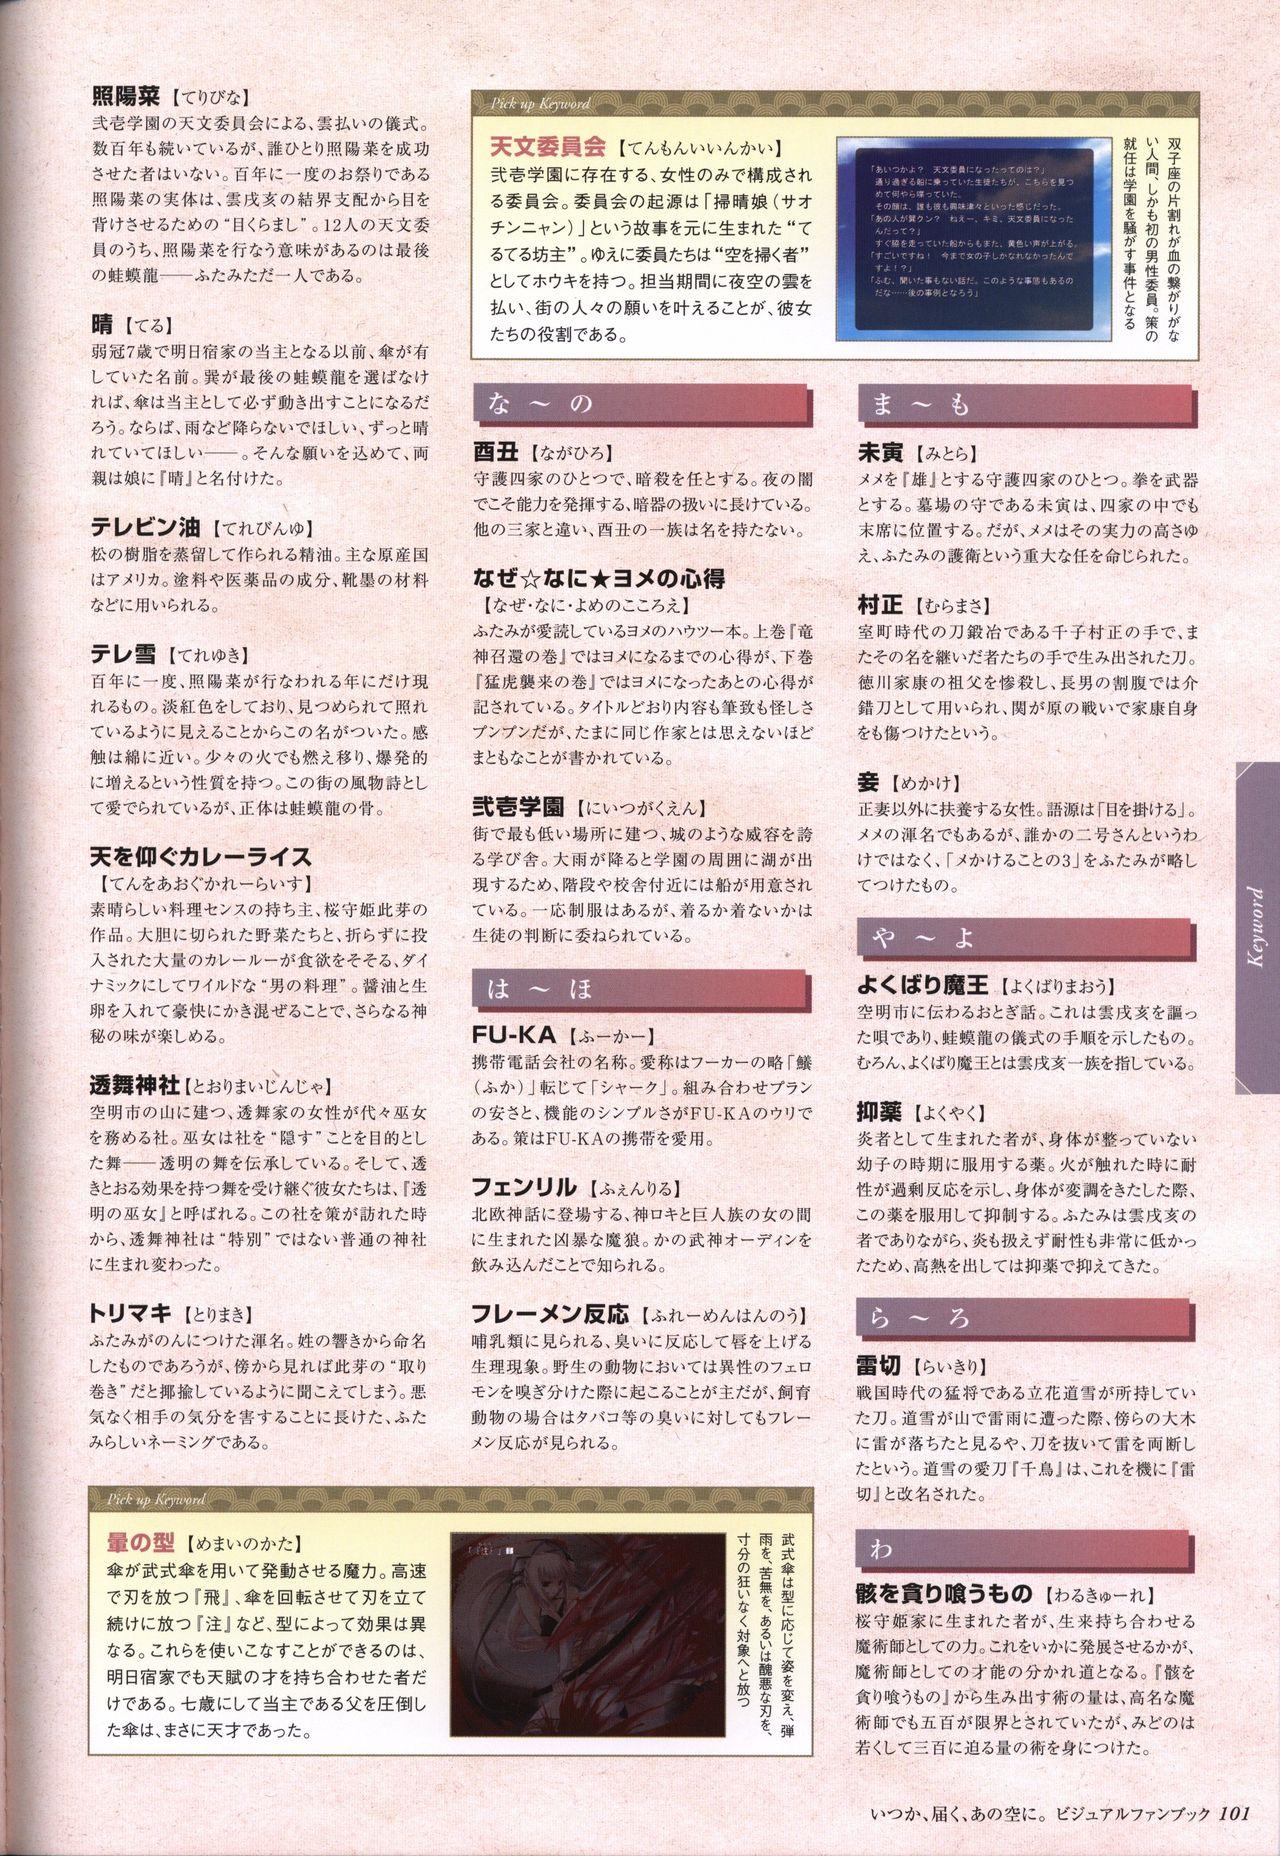 Itsuka, Todoku, Ano Sora ni. visual fanbook 101